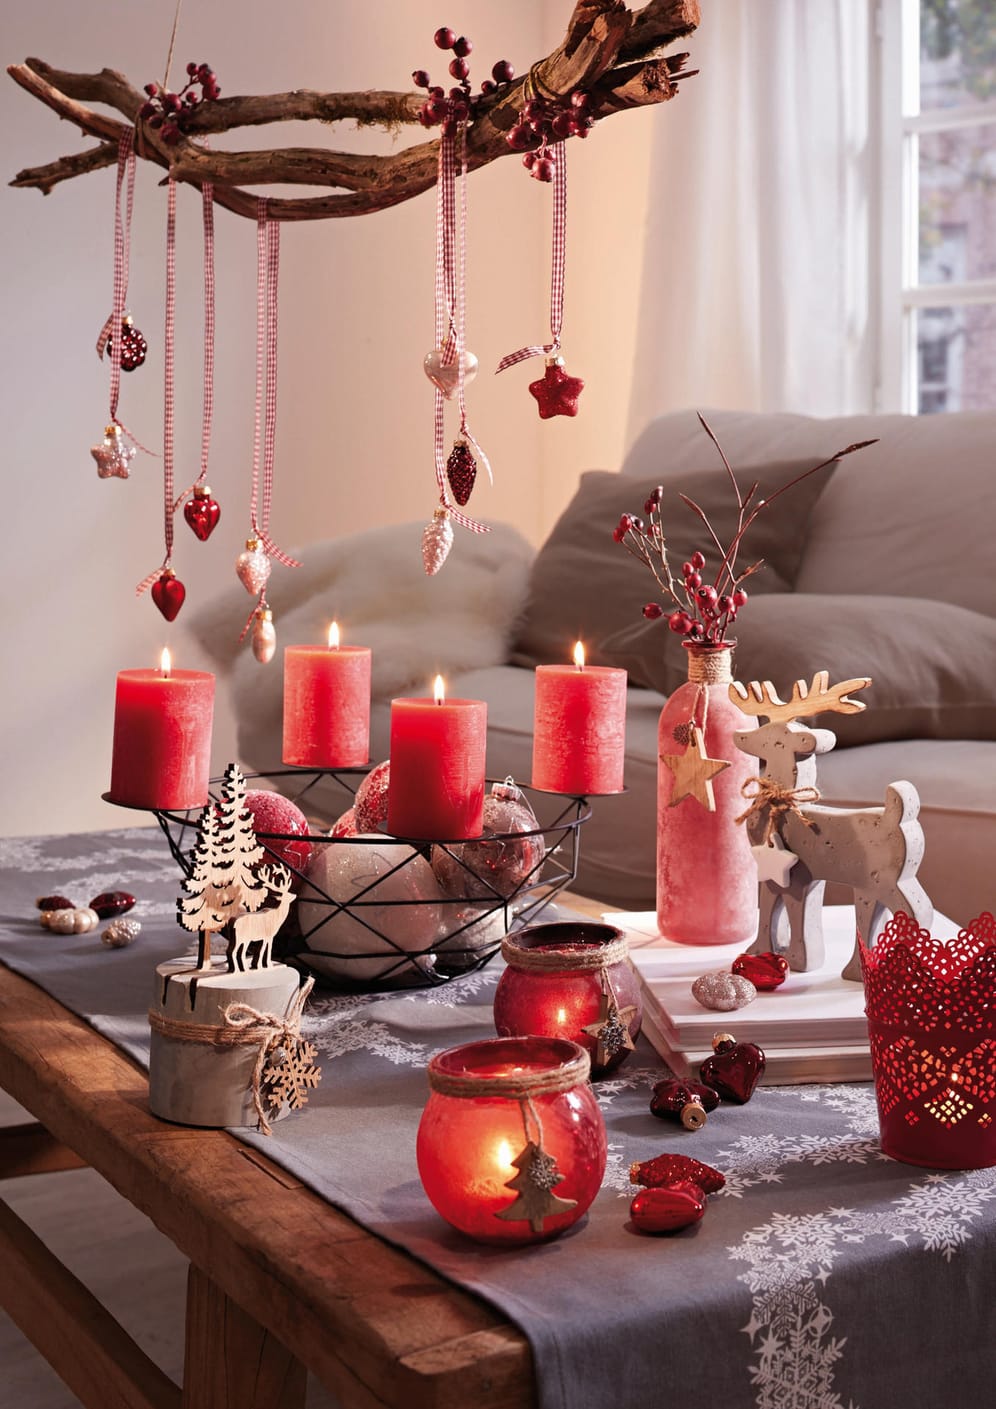 Weihnachtliche Dekoration mit Adventskranz, roten Beeren und Holzrentier